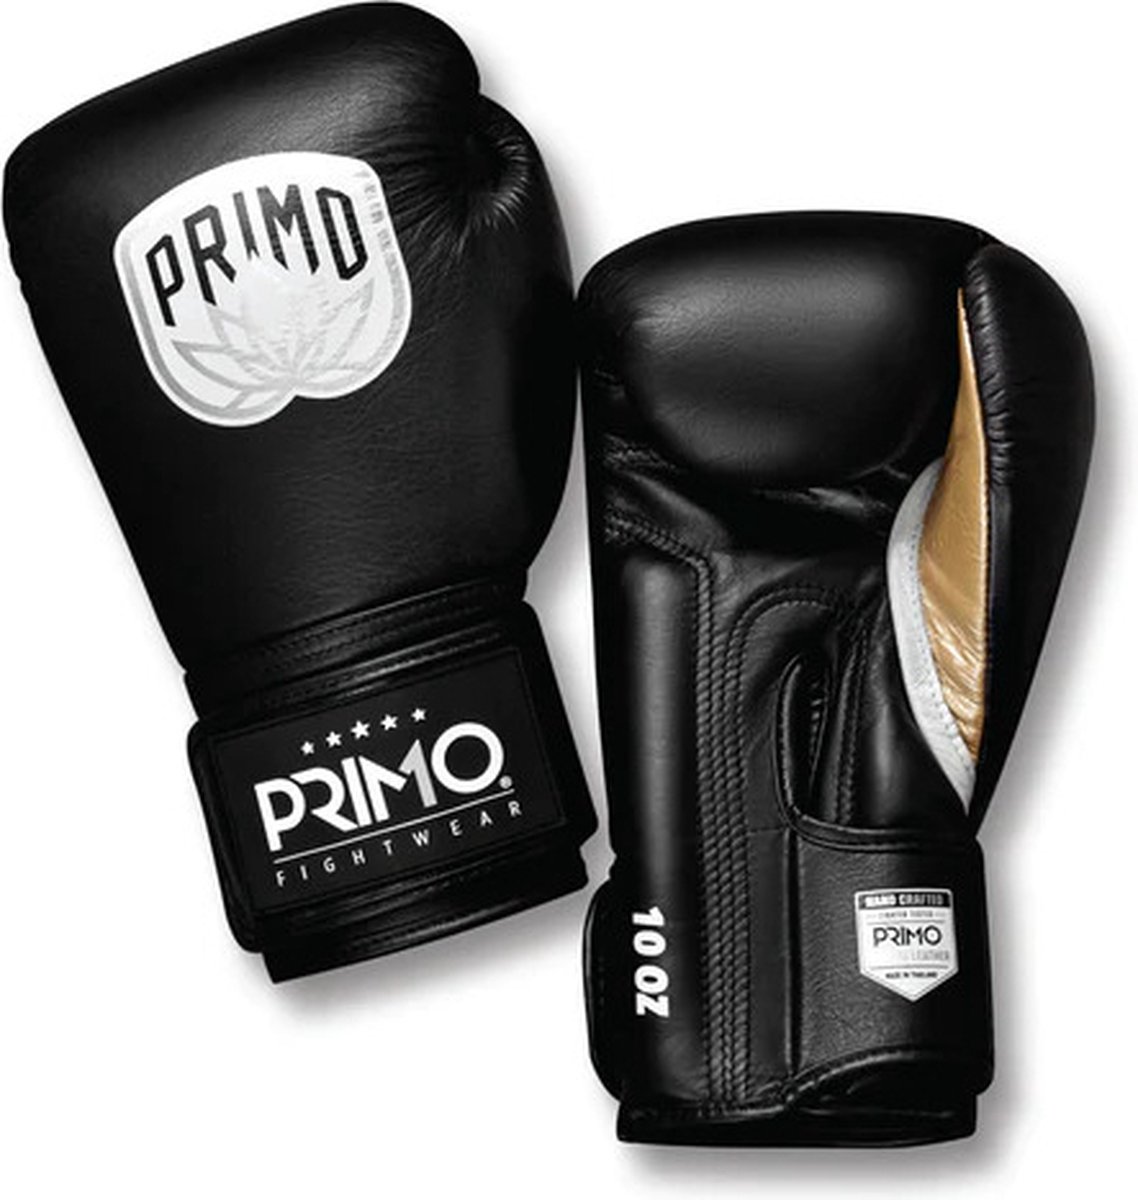 Primo Emblem 2.0 Bokshandschoenen - Onyx - Leder - zwart - 12 oz